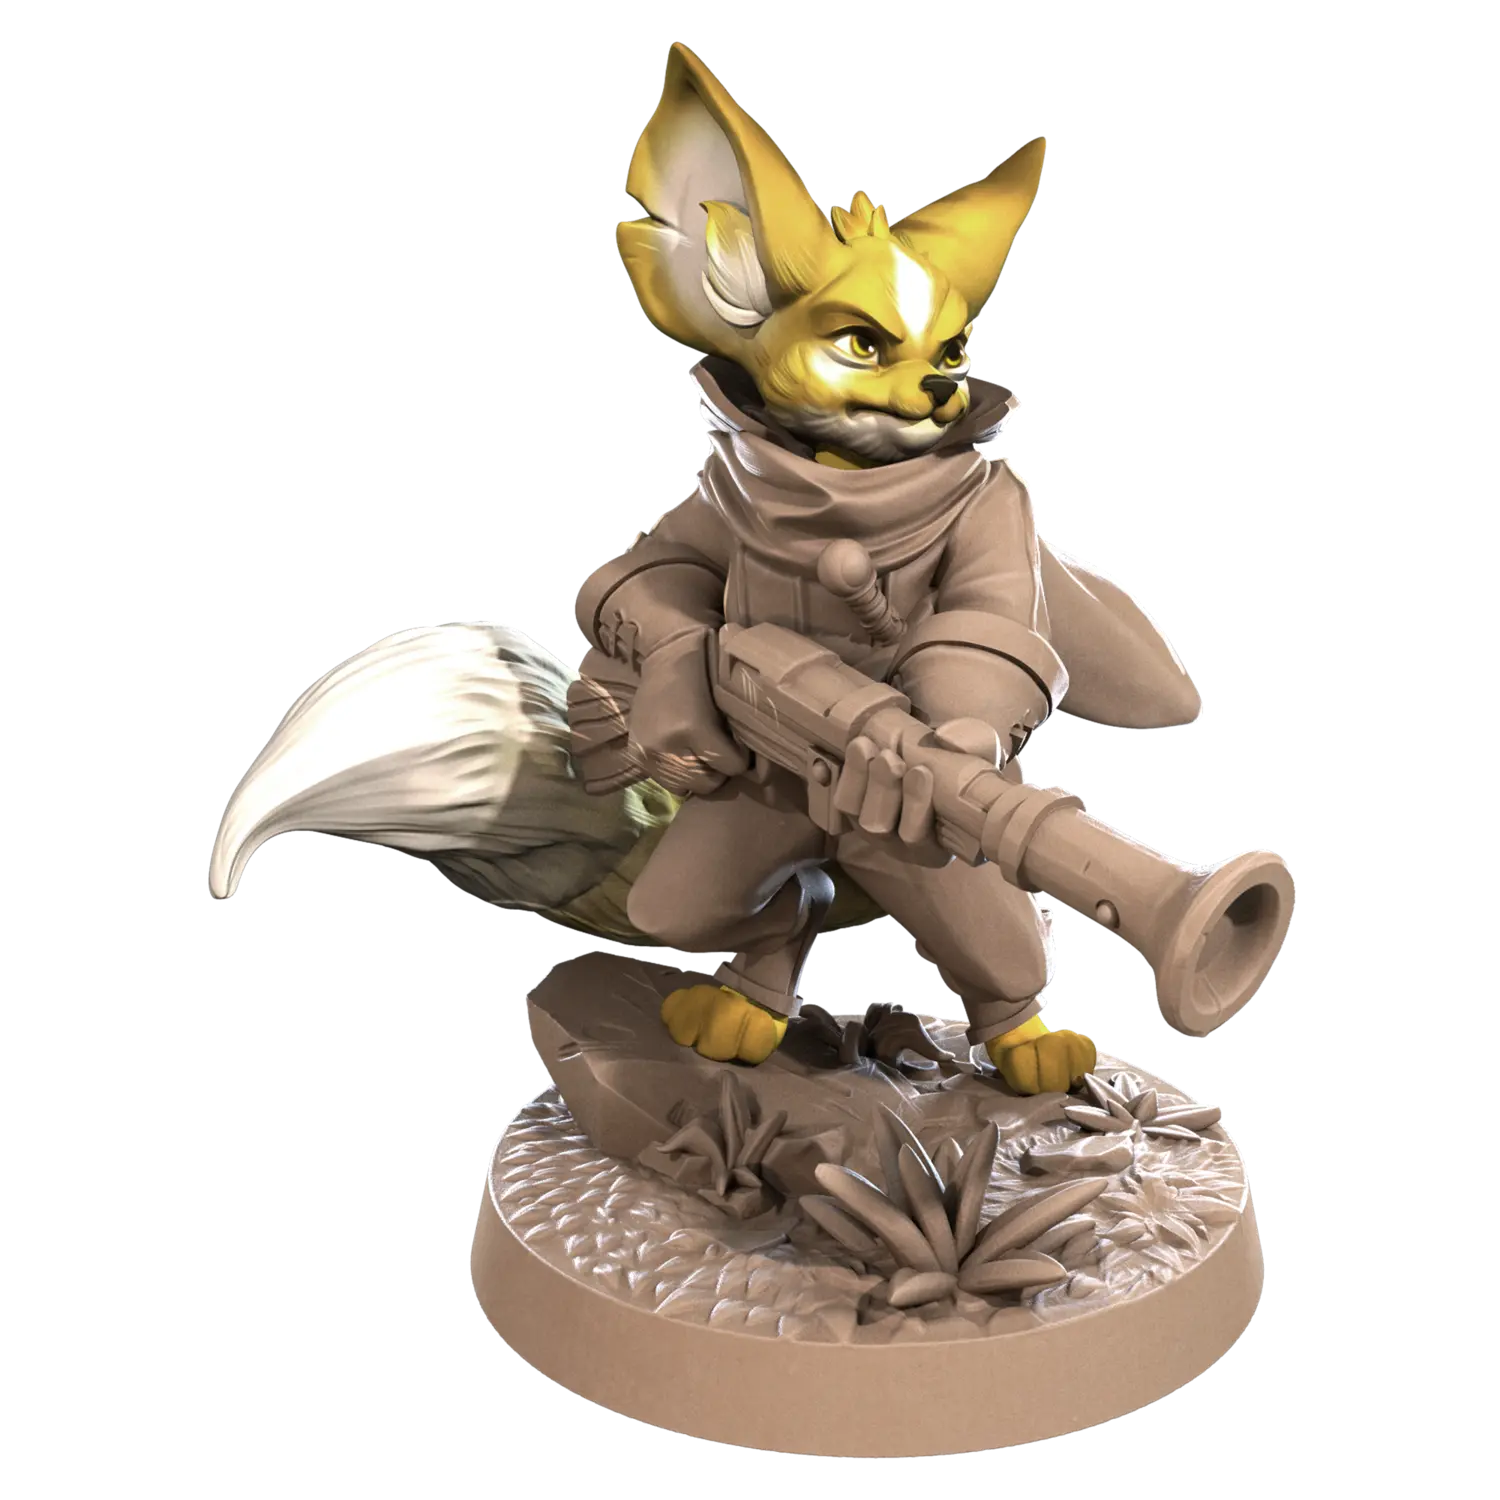 DnD Artificer - Foxfolks - Miniature - Ranger Finnegan  Artificer - Foxfolks - Miniature - Ranger sold by DoubleHitShop